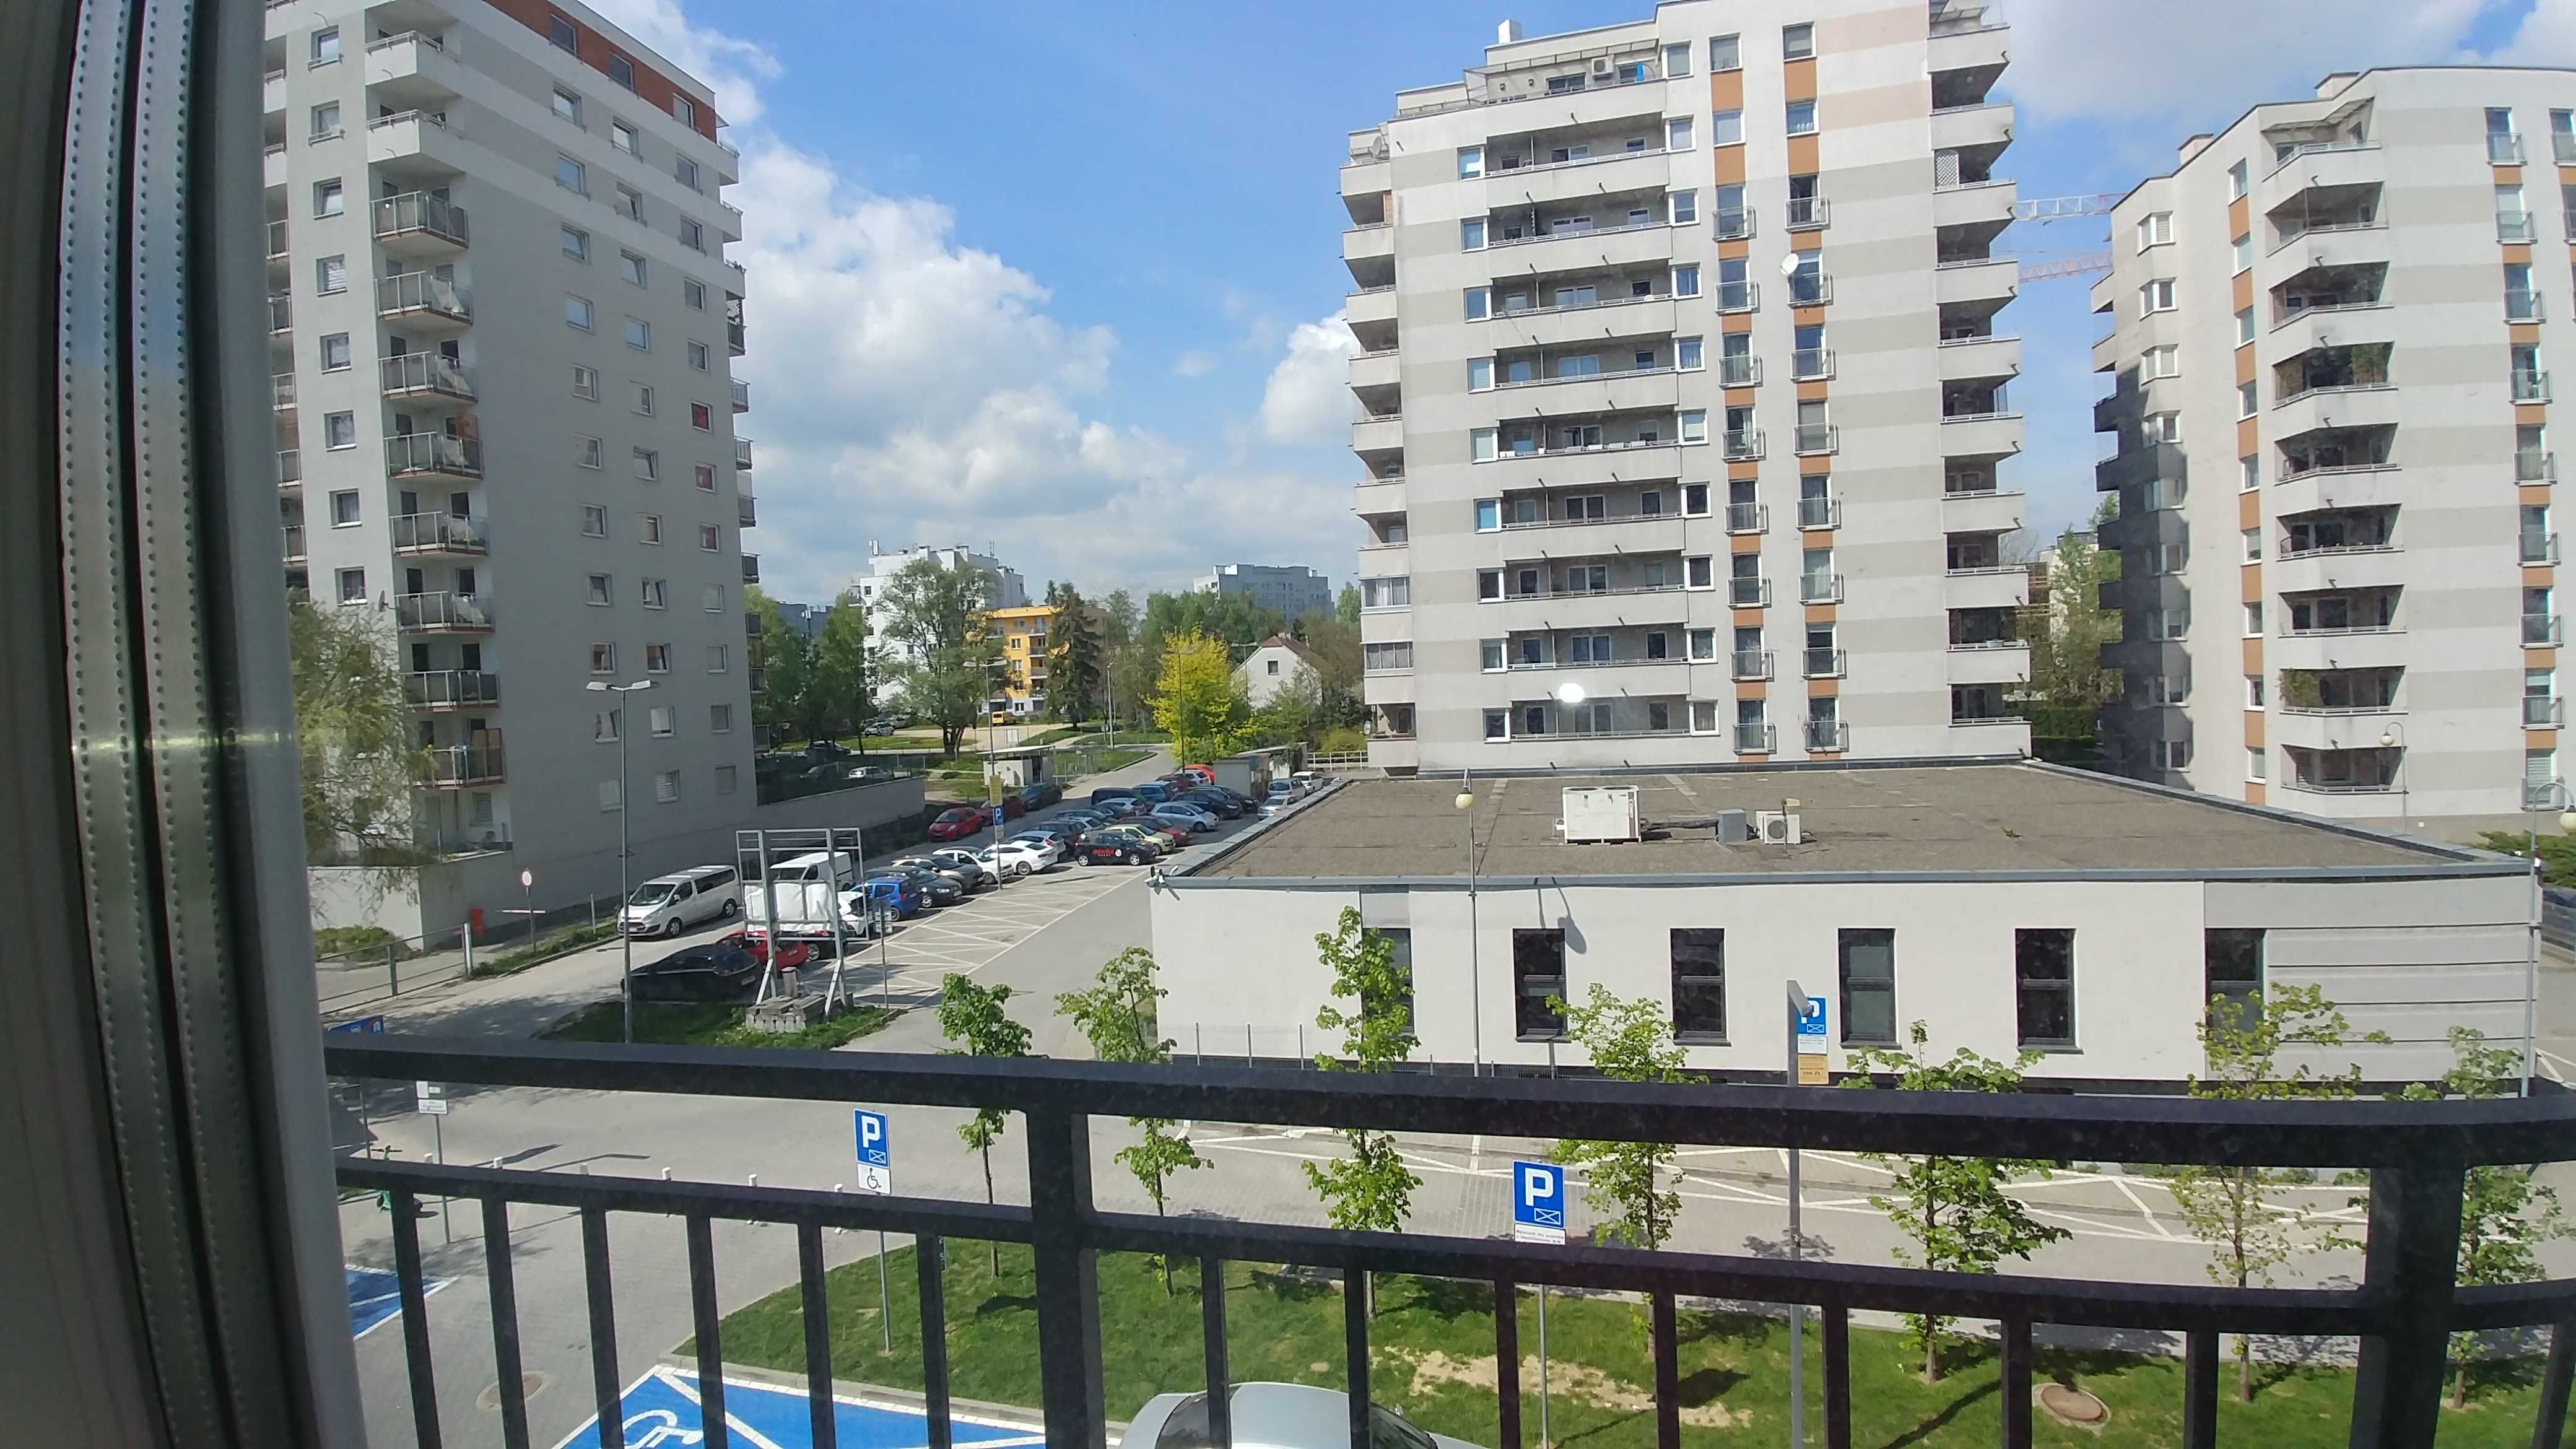 2 pokojowy Zadbany Wyposażony Apartament z Balkonem Parking GRATIS.